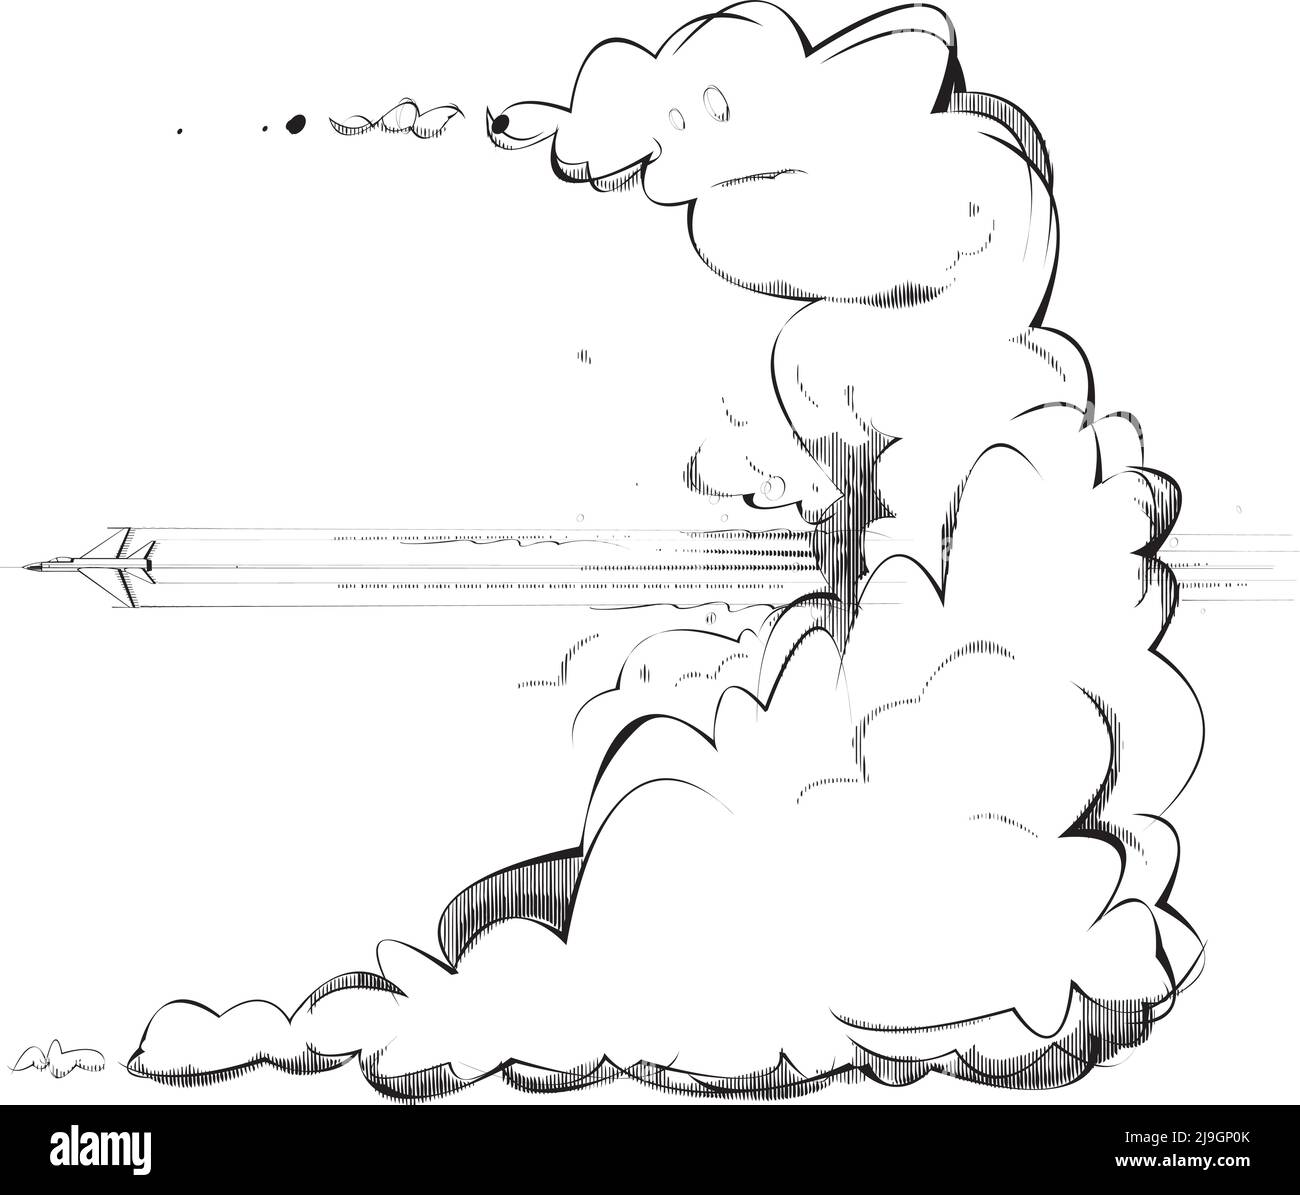 Una gran nube es atravesada por un avión jet Ilustración del Vector